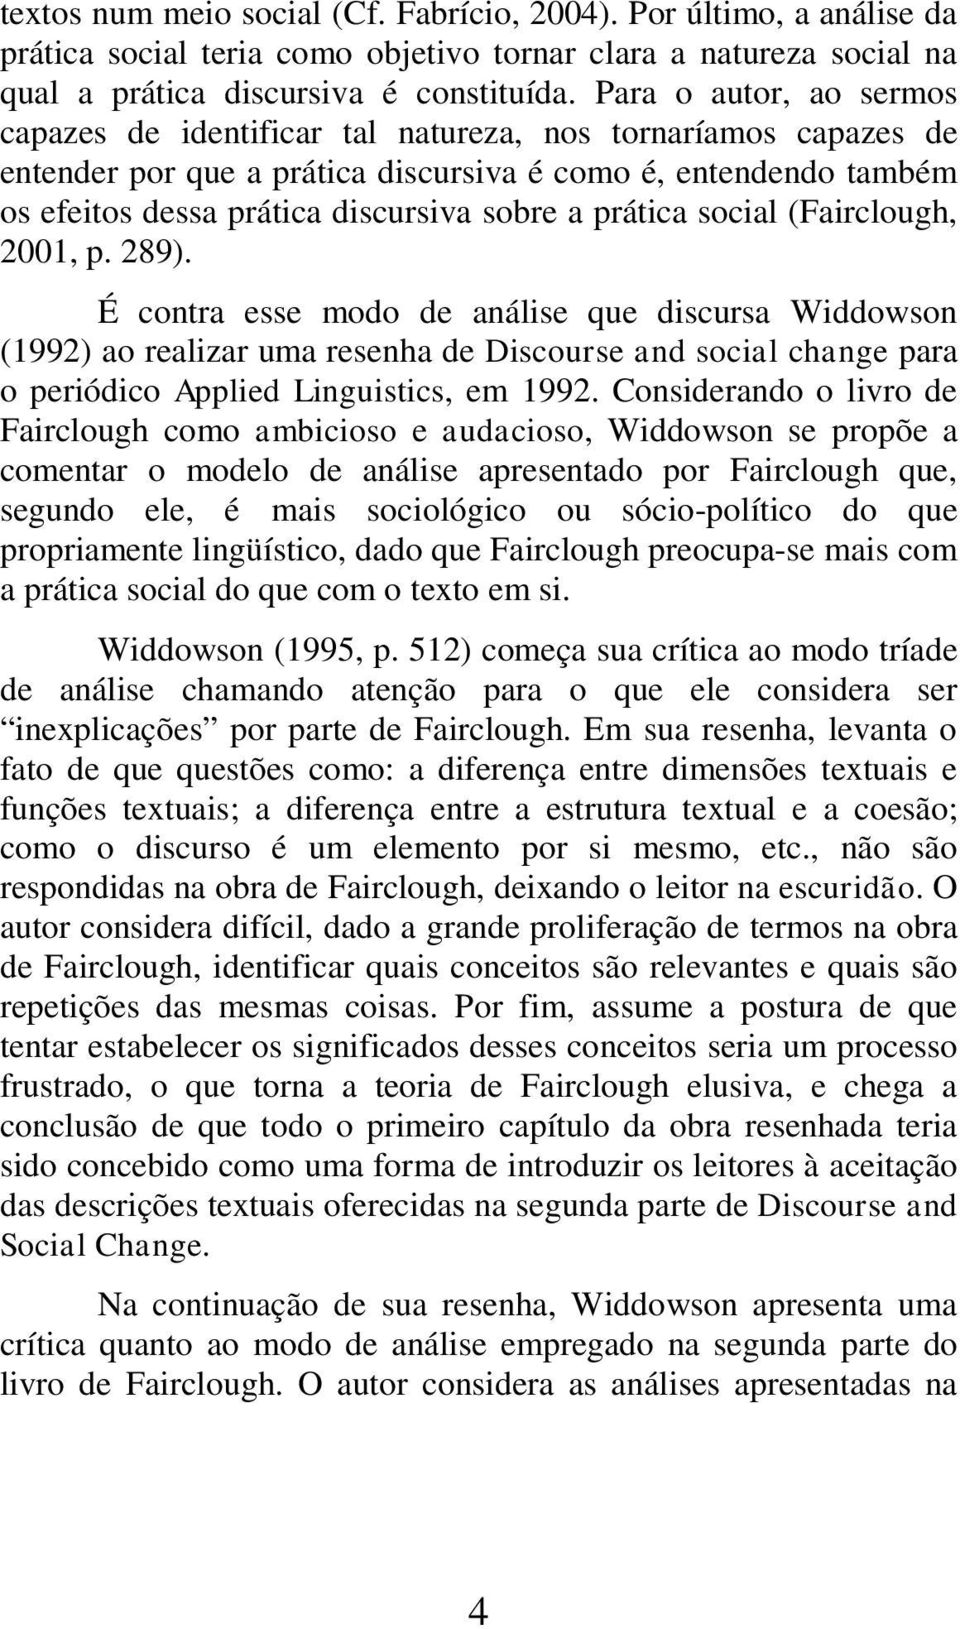 prática social (Fairclough, 2001, p. 289).